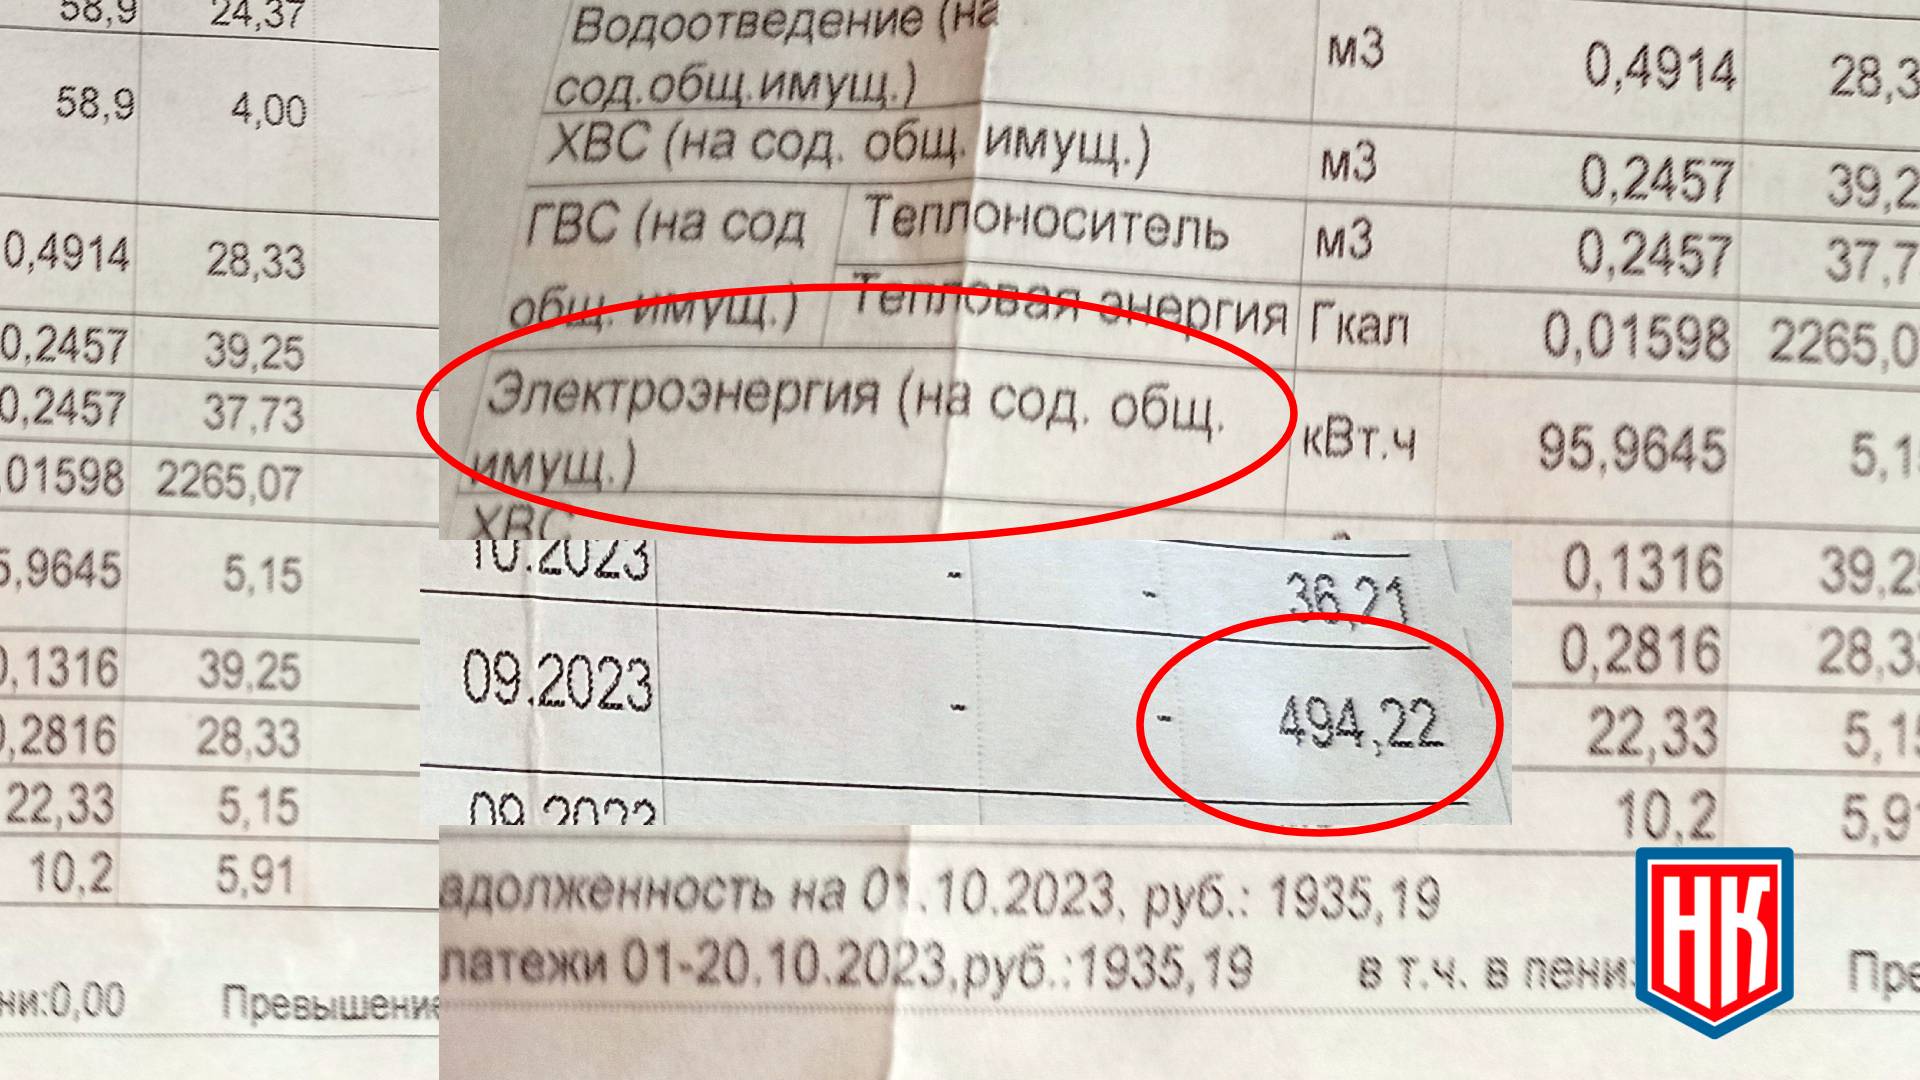 500 рублей в месяц за общедомовое электричество в квитанции